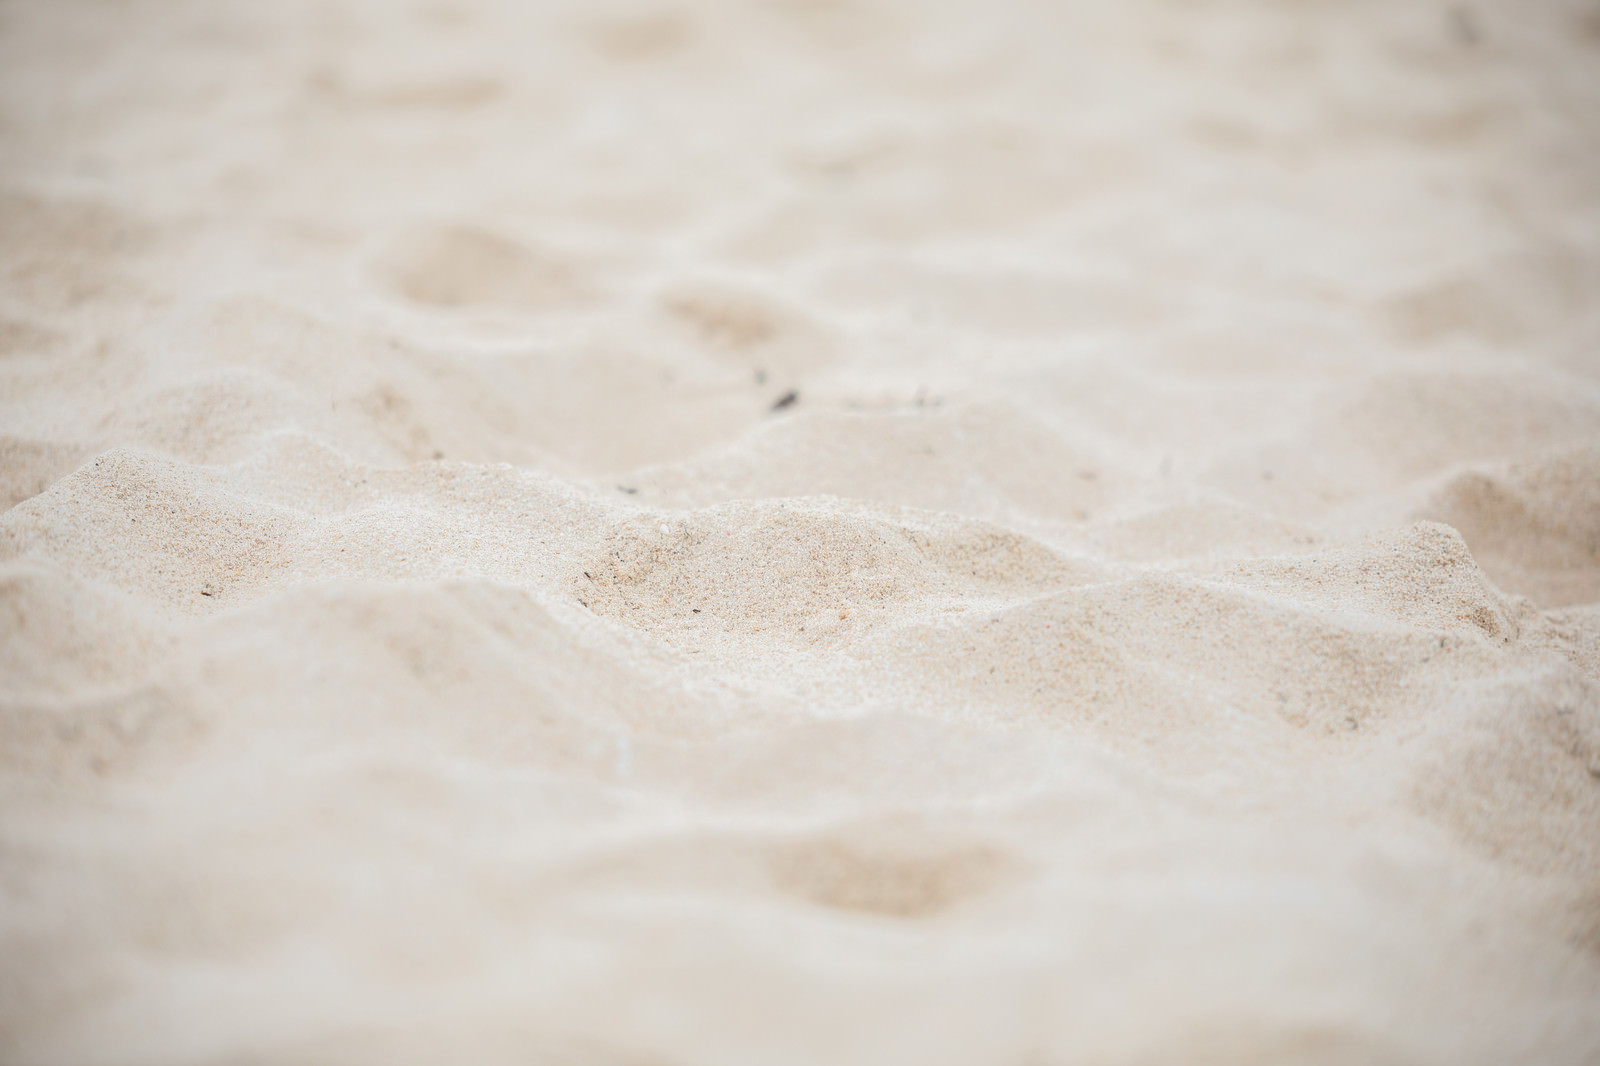 キレイな砂浜 宮古島の砂浜 の無料の写真素材 フリー素材 をダウンロード ぱくたそ